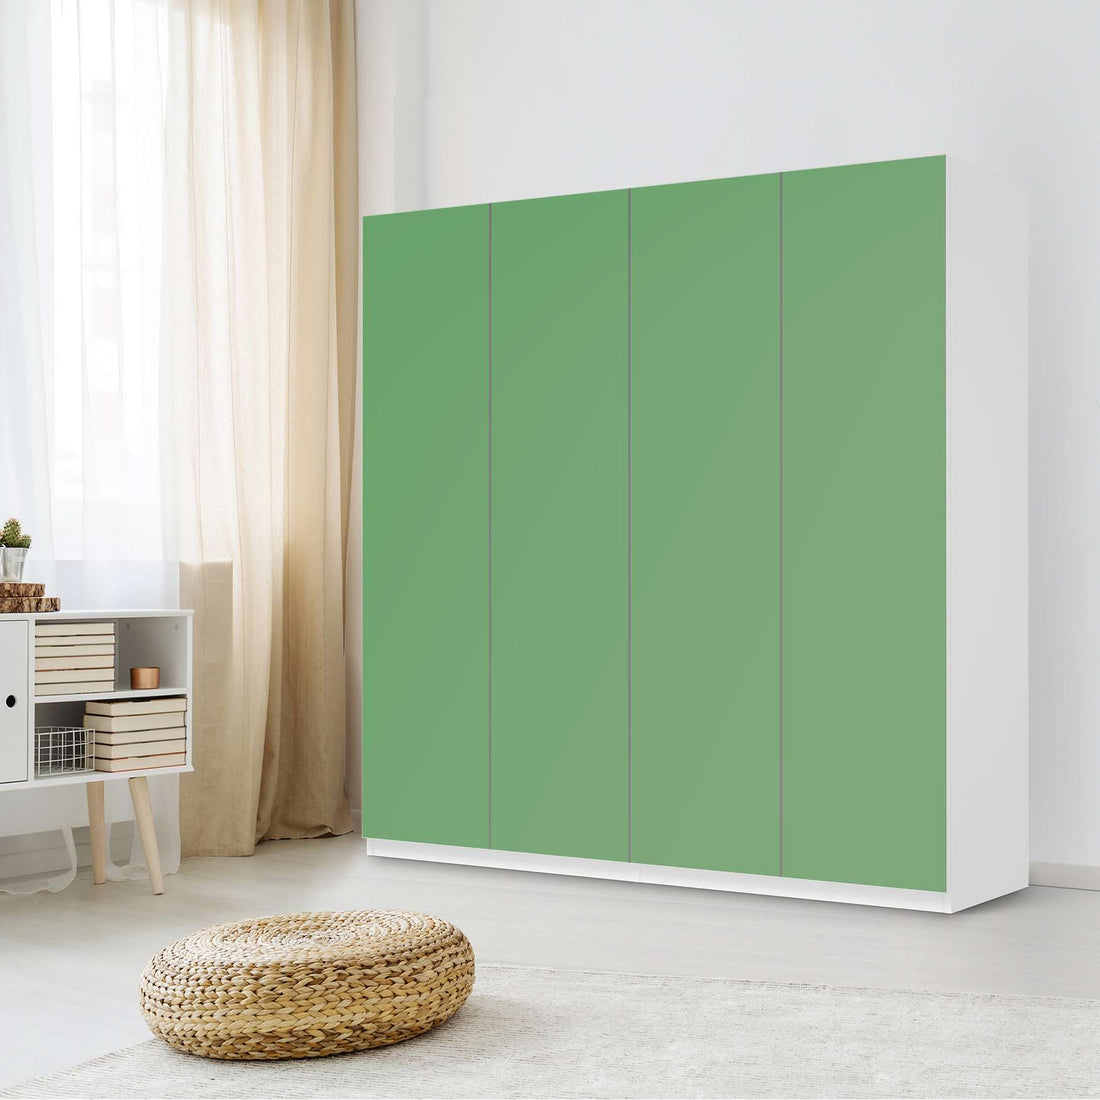 Klebefolie für Schränke Grün Light - IKEA Pax Schrank 201 cm Höhe - 4 Türen - Schlafzimmer